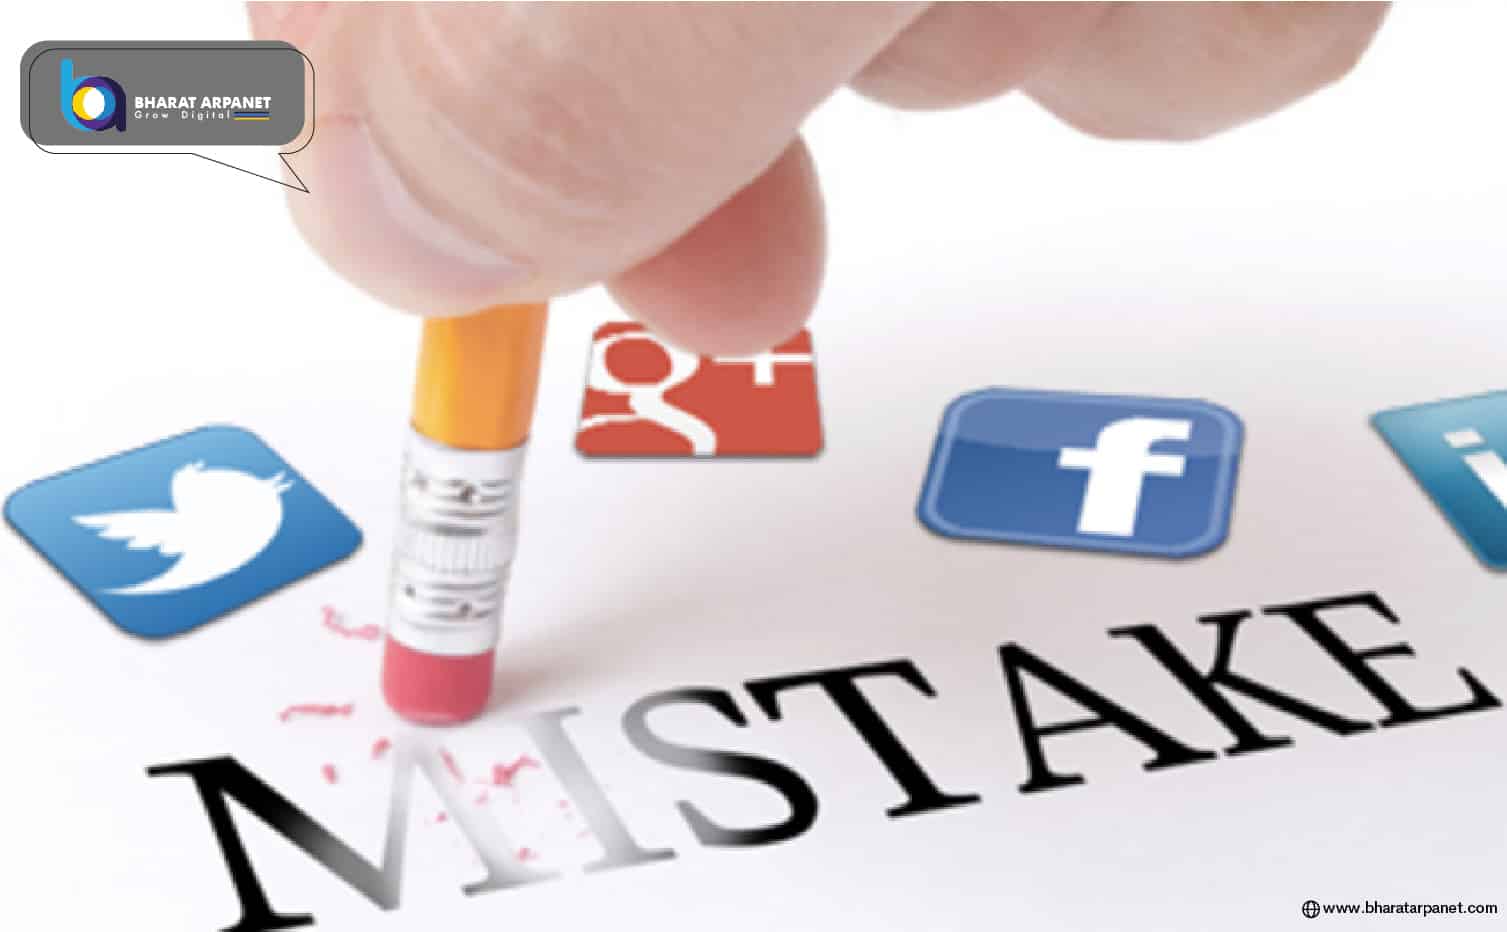 Social Media Marketing Mistakes to Avoid